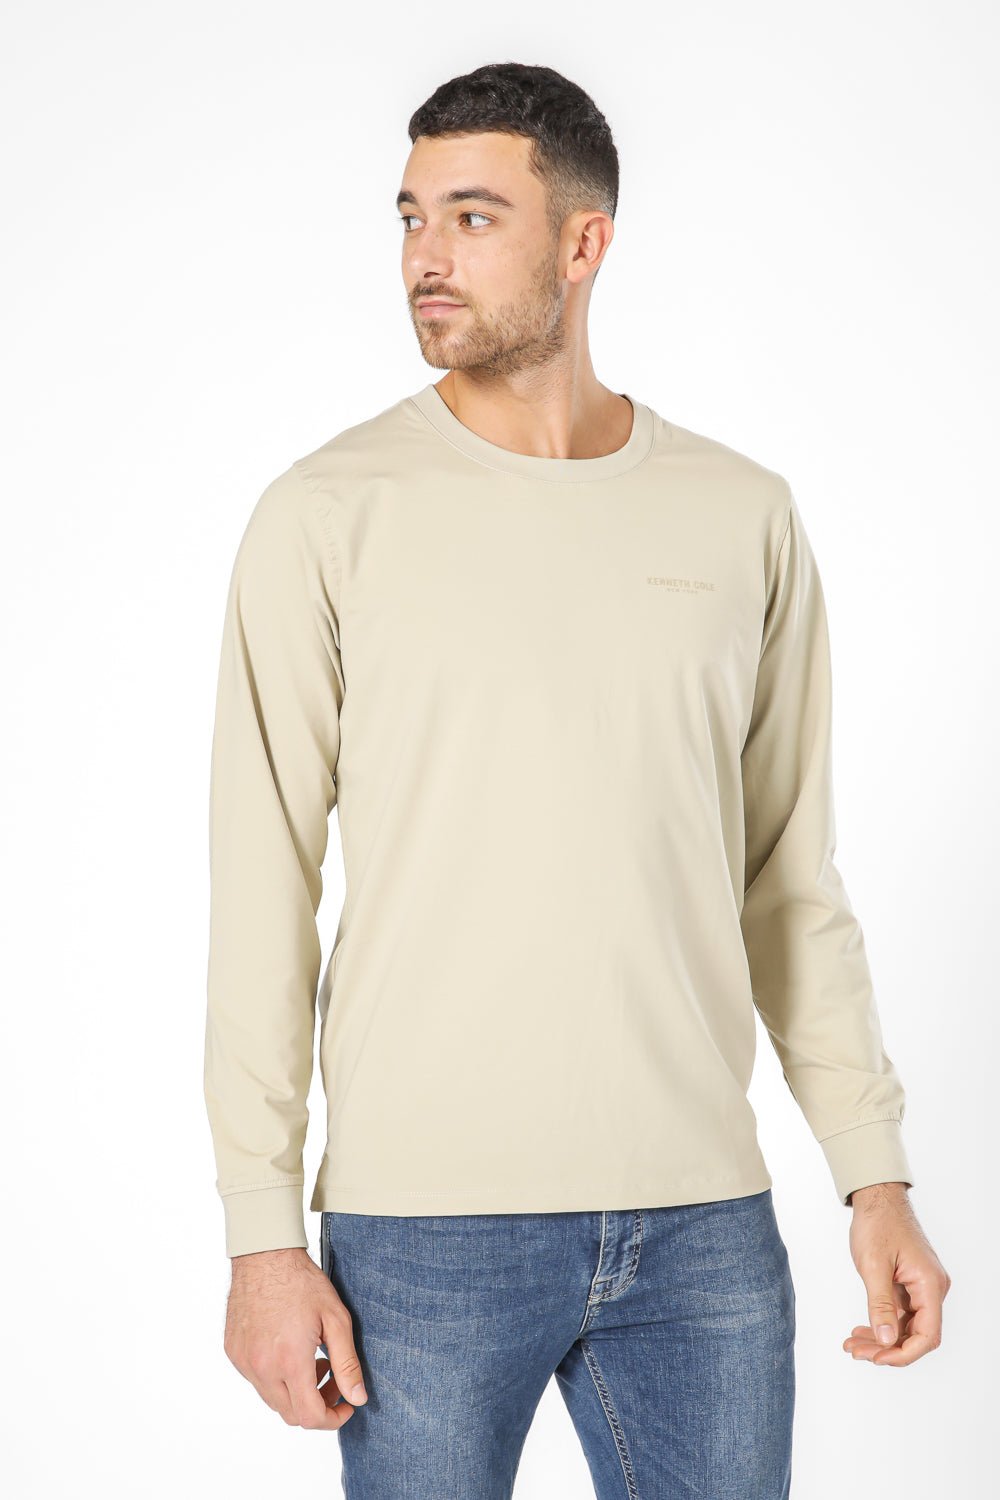 KENNETH COLE - חולצה ארוכה עם לוגו - MASHBIR//365